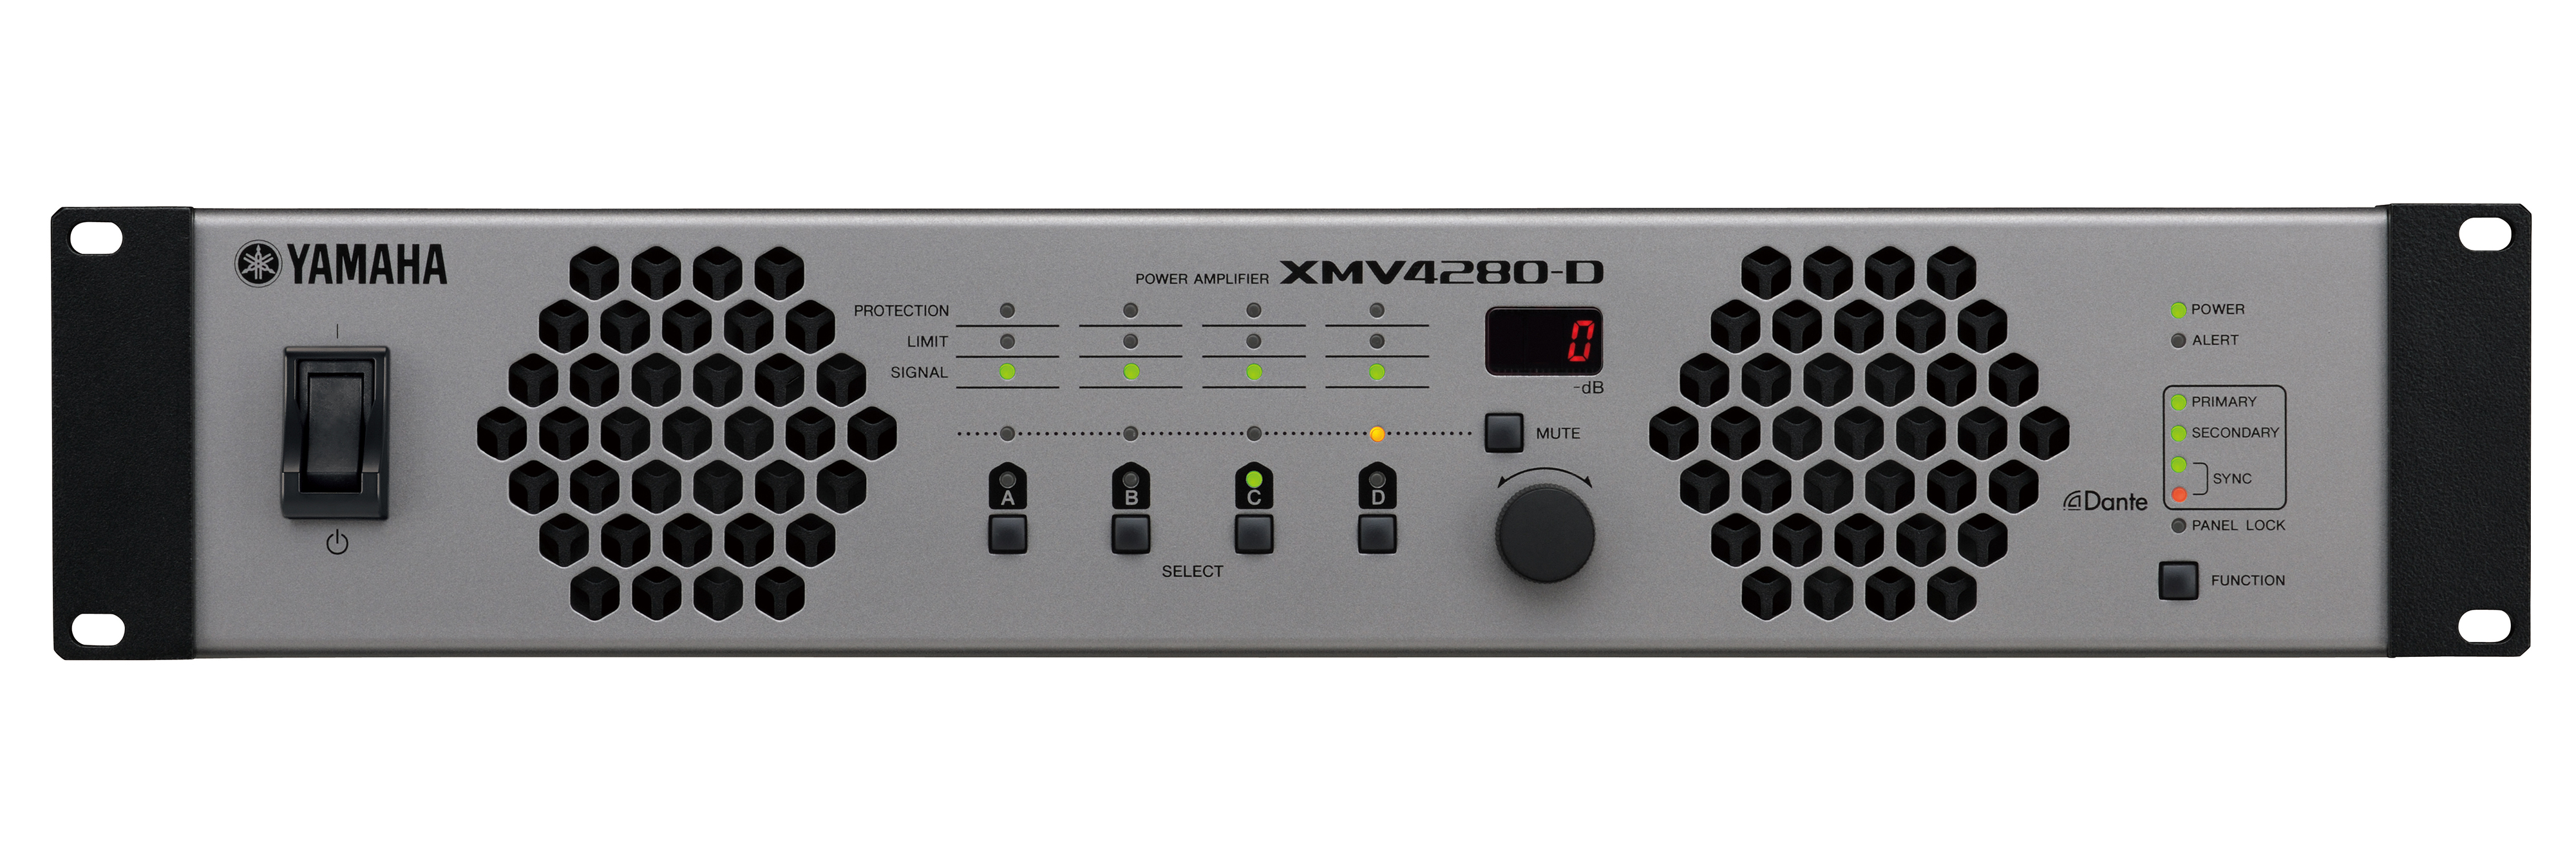 Купить музыкальный усилитель. Yamaha xmv8140-d. Yamaha xmv4140. Yamaha xmv8280-d. Yamaha xmv8280-d усилитель.